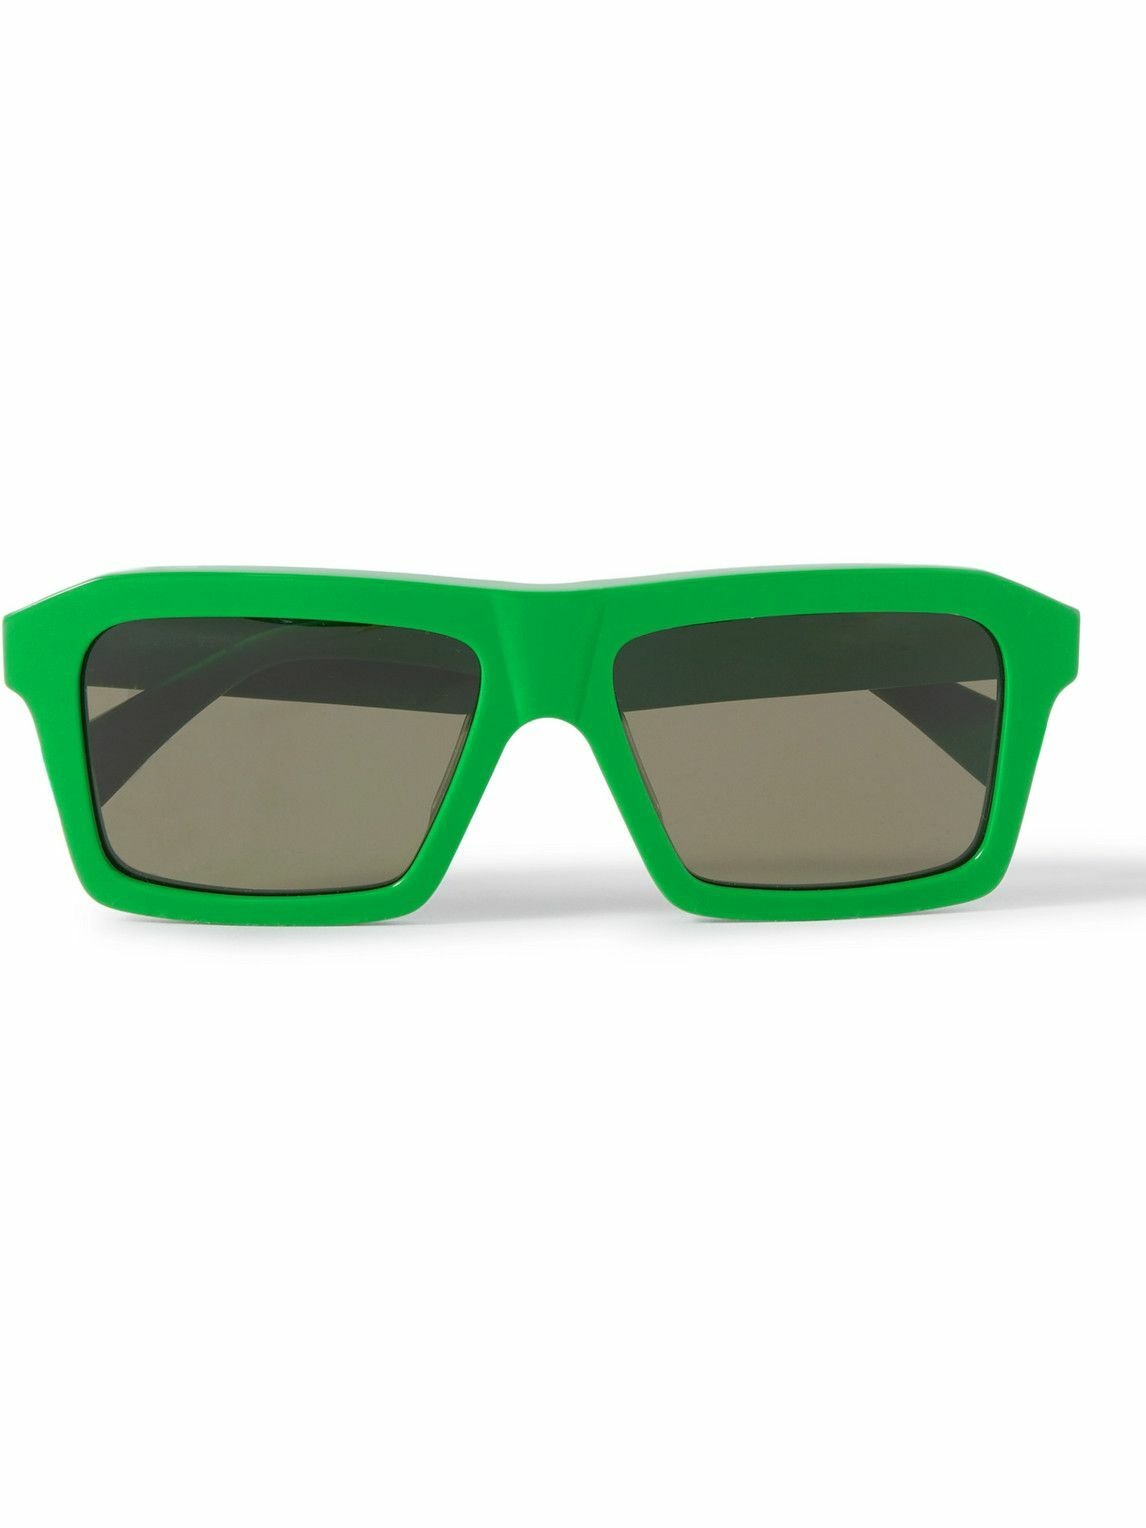 Bottega Veneta - Rectangular-Frame Acetate Sunglasses Bottega Veneta